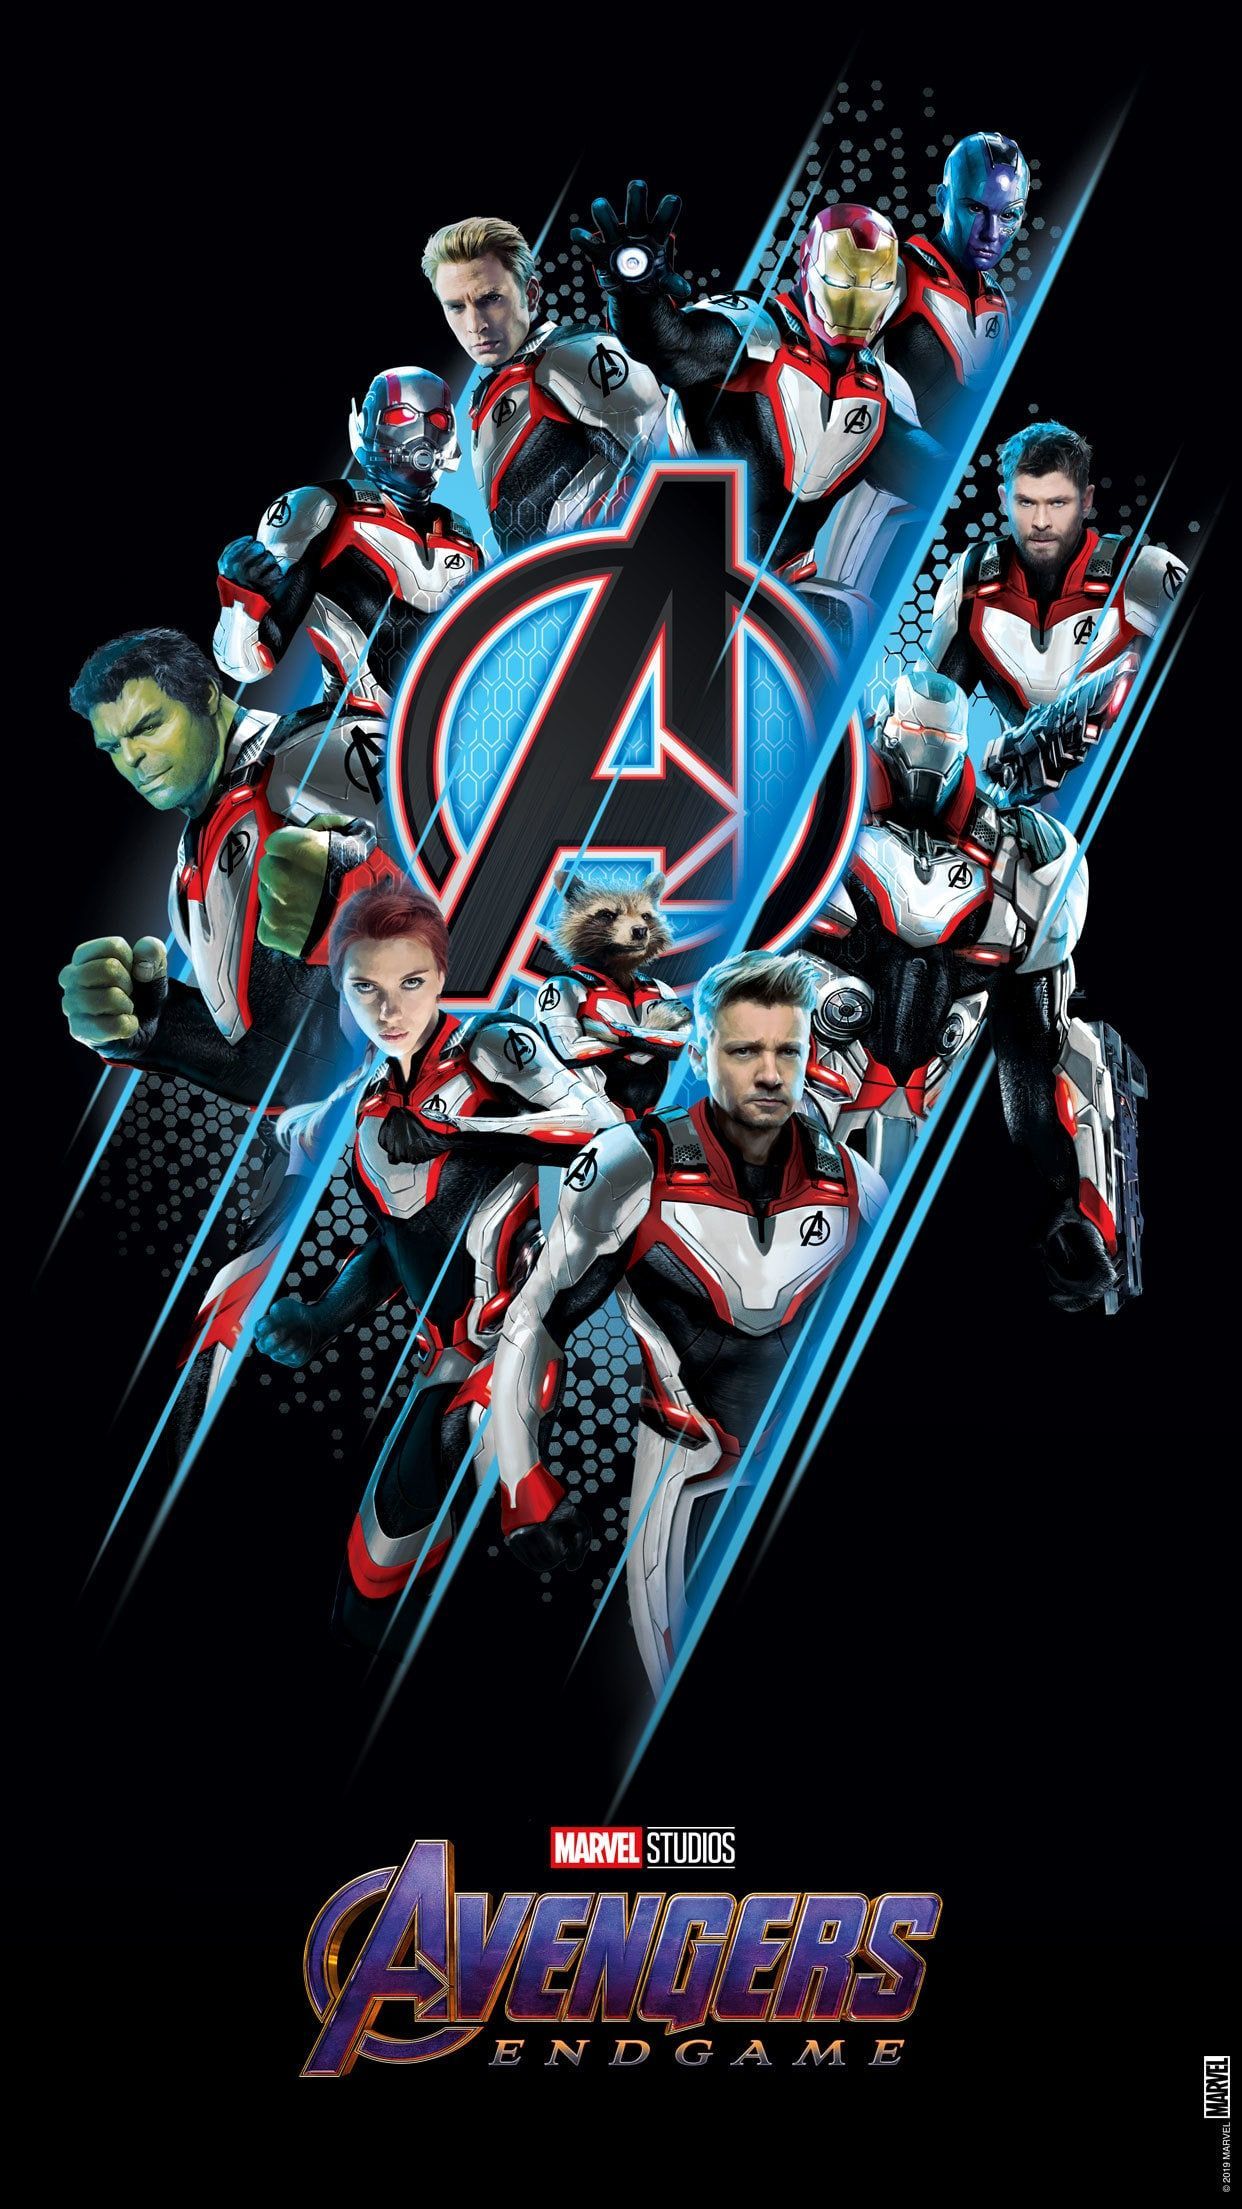 Avengers: Endgame Wallpaper Draft. Disney Philippines. Avengers wallpaper, Marvel avengers comics, Marvel wallpaper